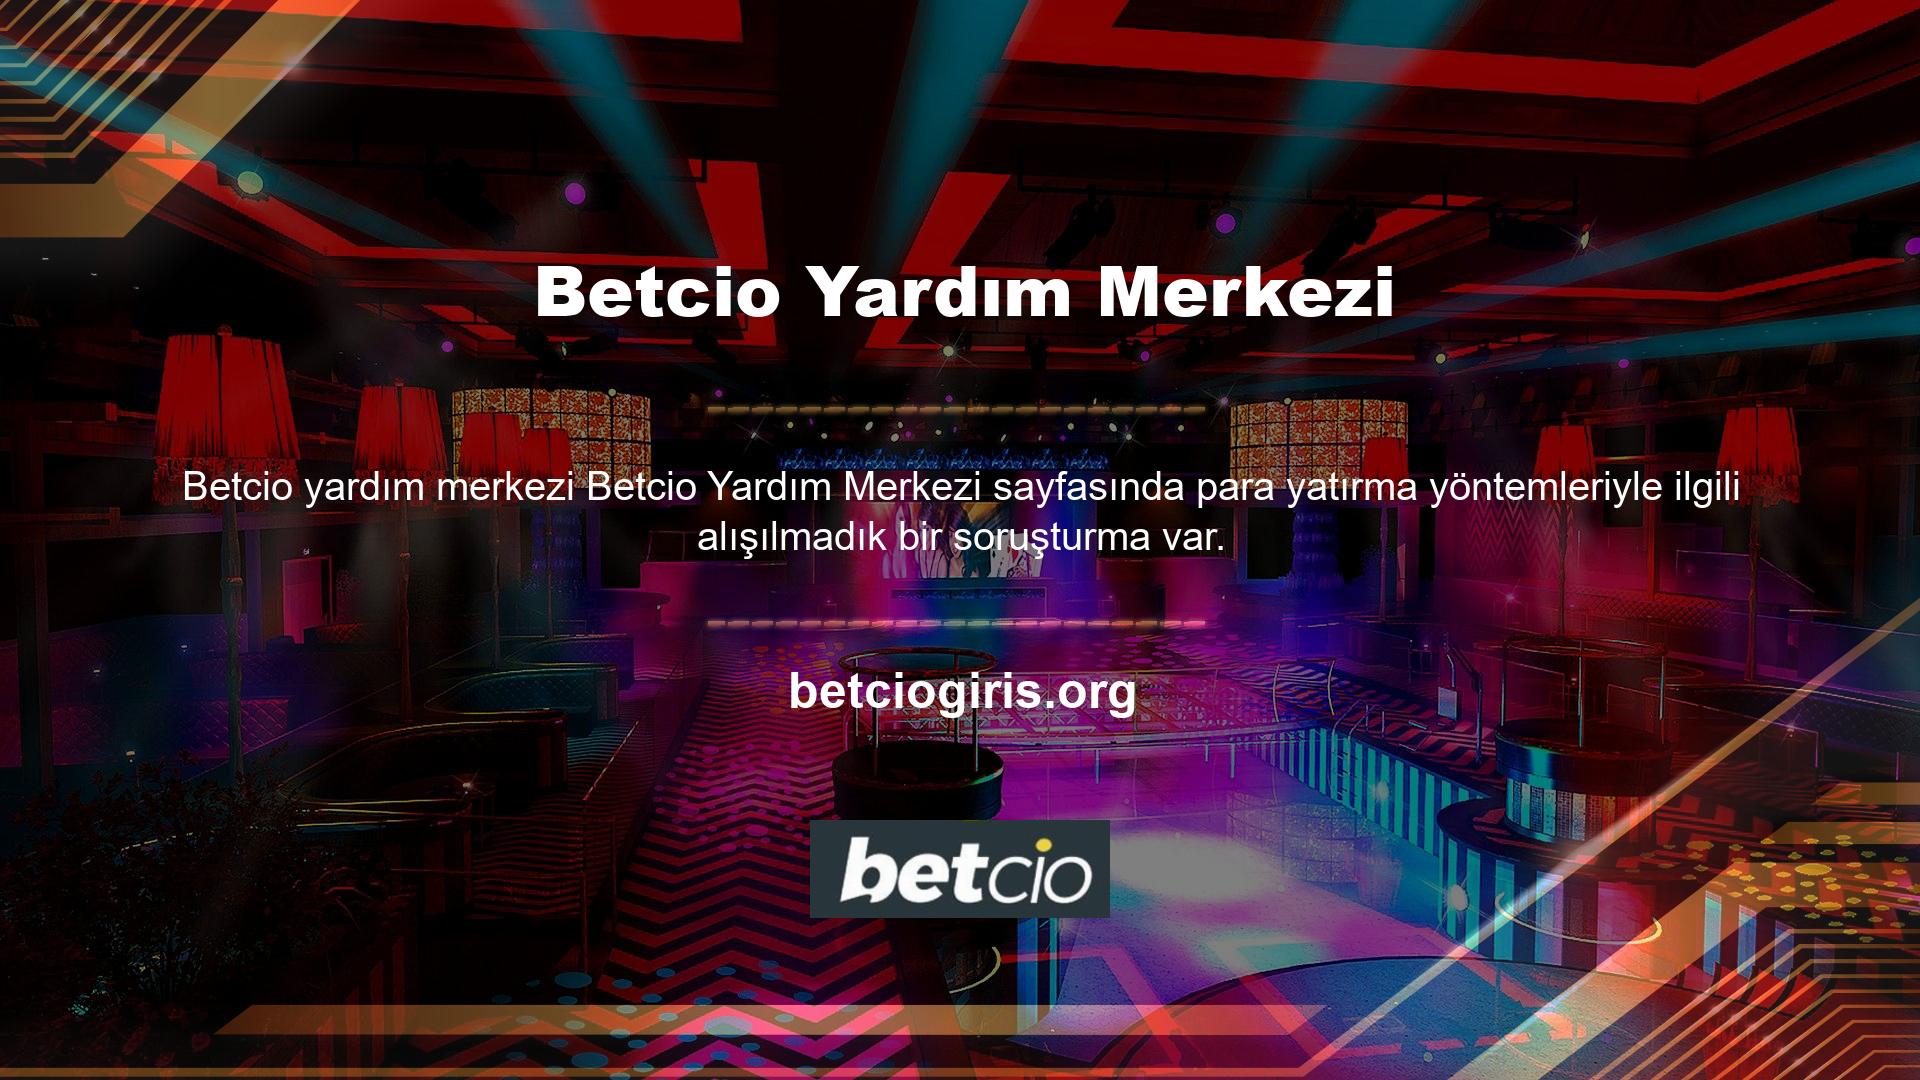 Betcio, oyuncuların çeşitli teknolojiler ve sektörlerde para yatırmalarına yardımcı olmak için basit para yatırma yöntemleri sunarÇevrimiçi alışveriş ve Casino siteleri, kredi kartlarını bir ödeme teknolojisi biçimi olarak kabul etmektedir